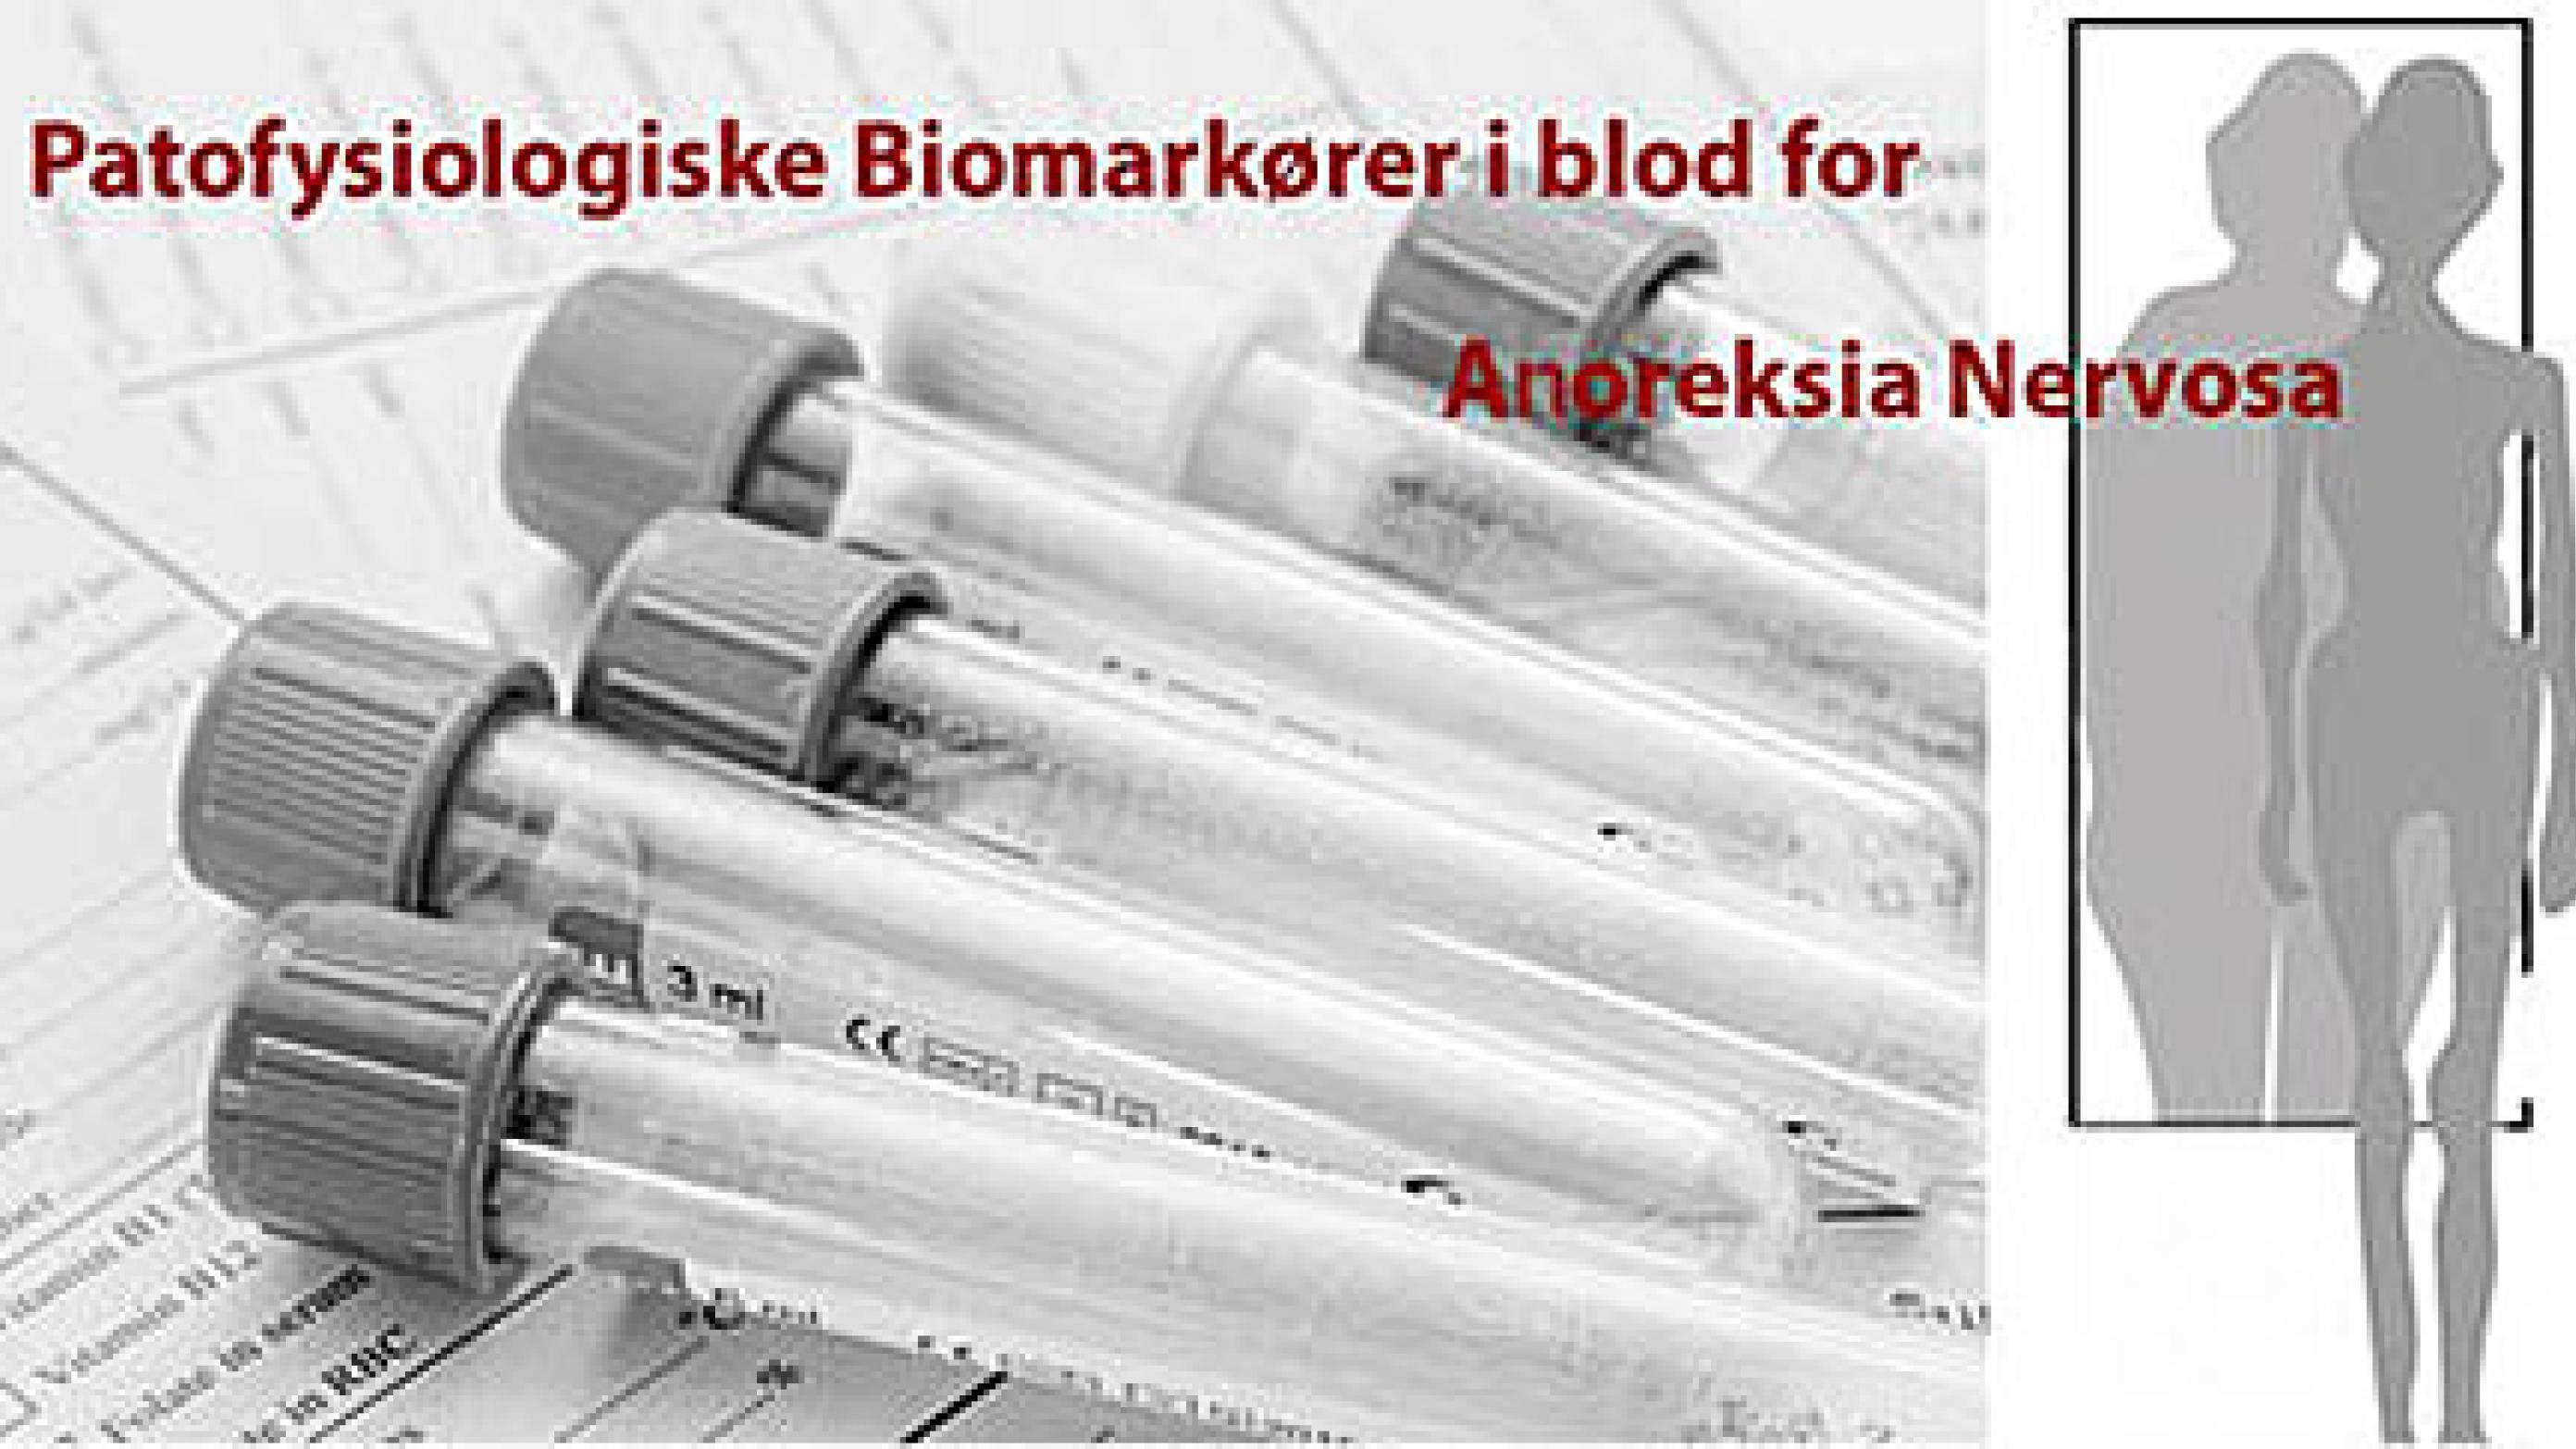 Patofysiologiske biomarkører i blod for anorexia nervosa.